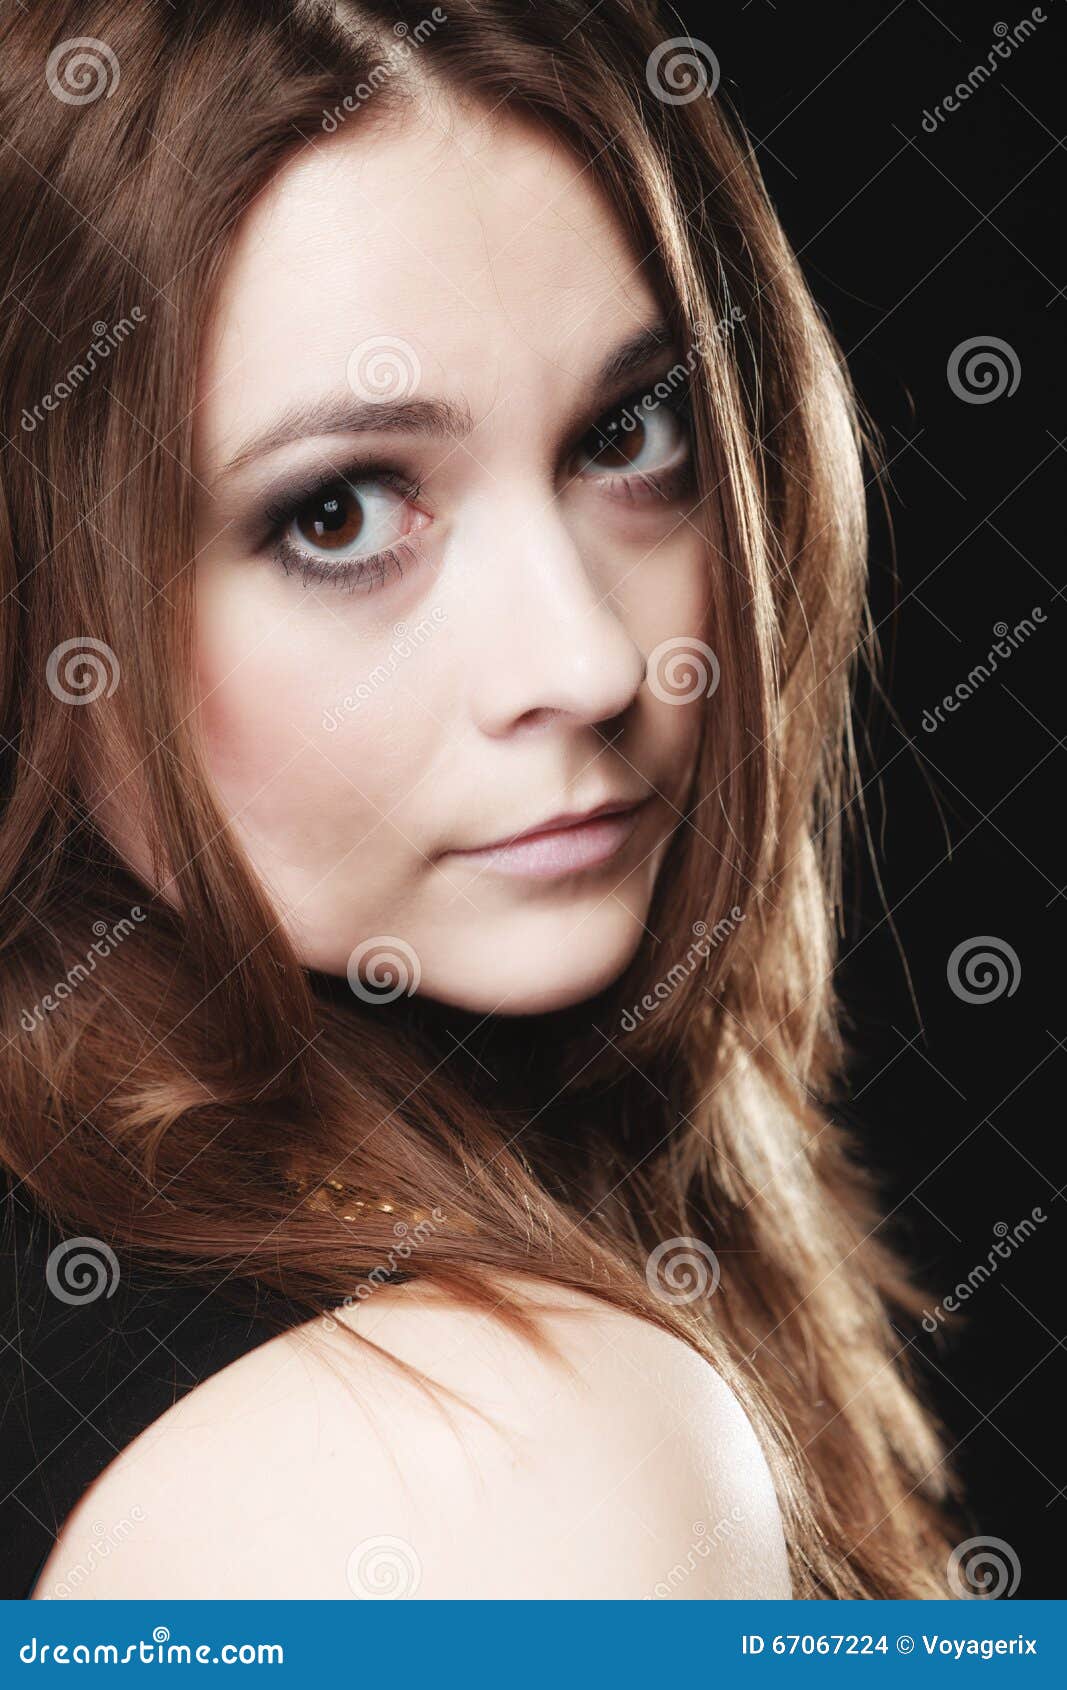 People Concept - Teenage Girl Portrait Stock Photo - Image of ...